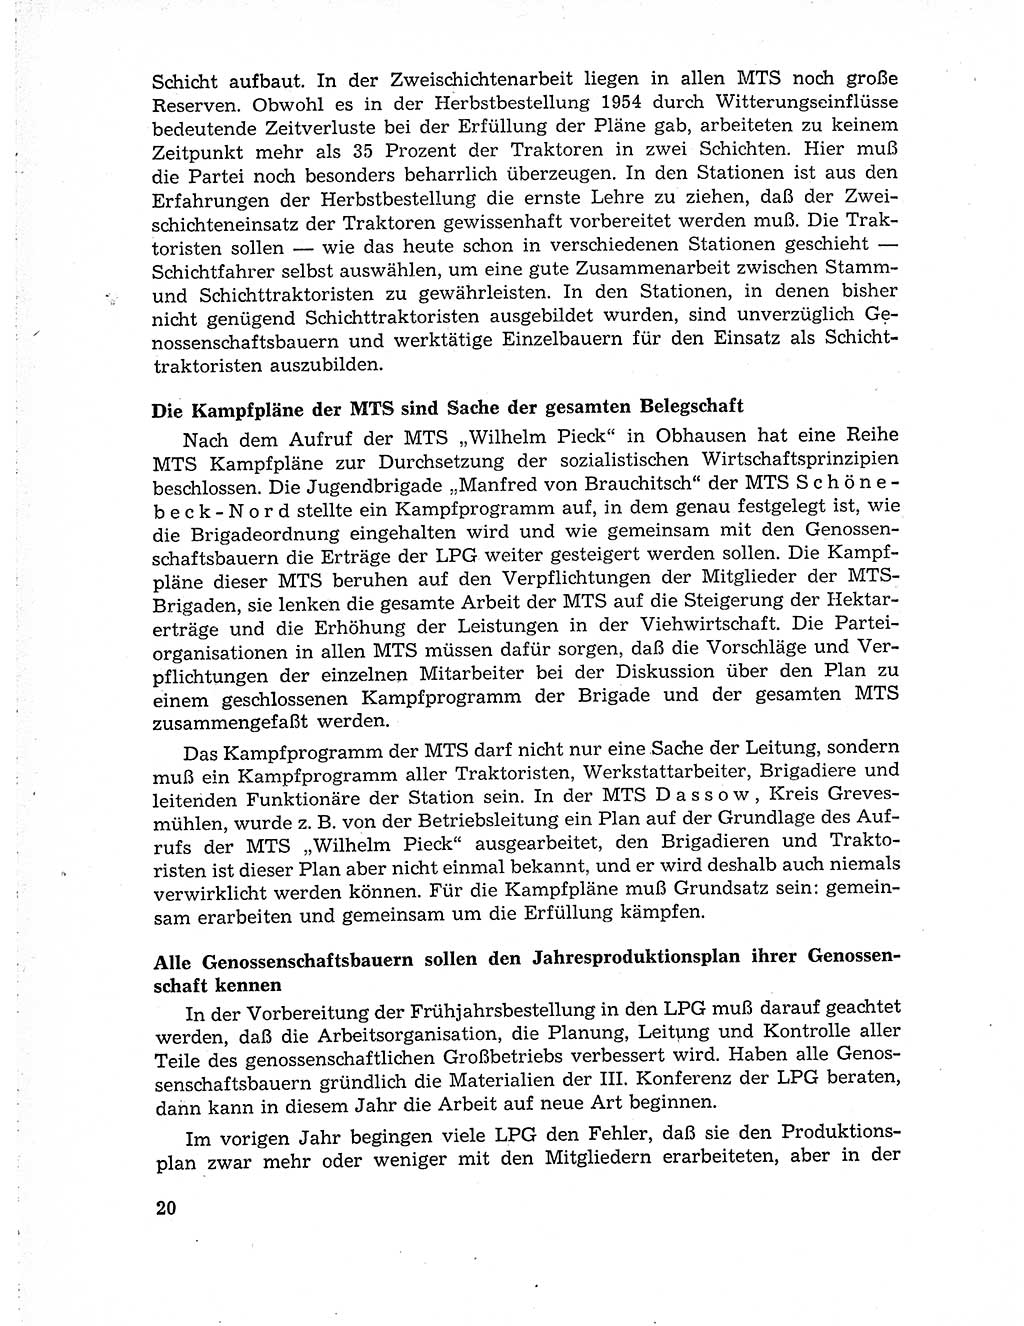 Neuer Weg (NW), Organ des Zentralkomitees (ZK) der SED (Sozialistische Einheitspartei Deutschlands) für Fragen des Parteiaufbaus und des Parteilebens, 10. Jahrgang [Deutsche Demokratische Republik (DDR)] 1955, Seite 20 (NW ZK SED DDR 1955, S. 20)